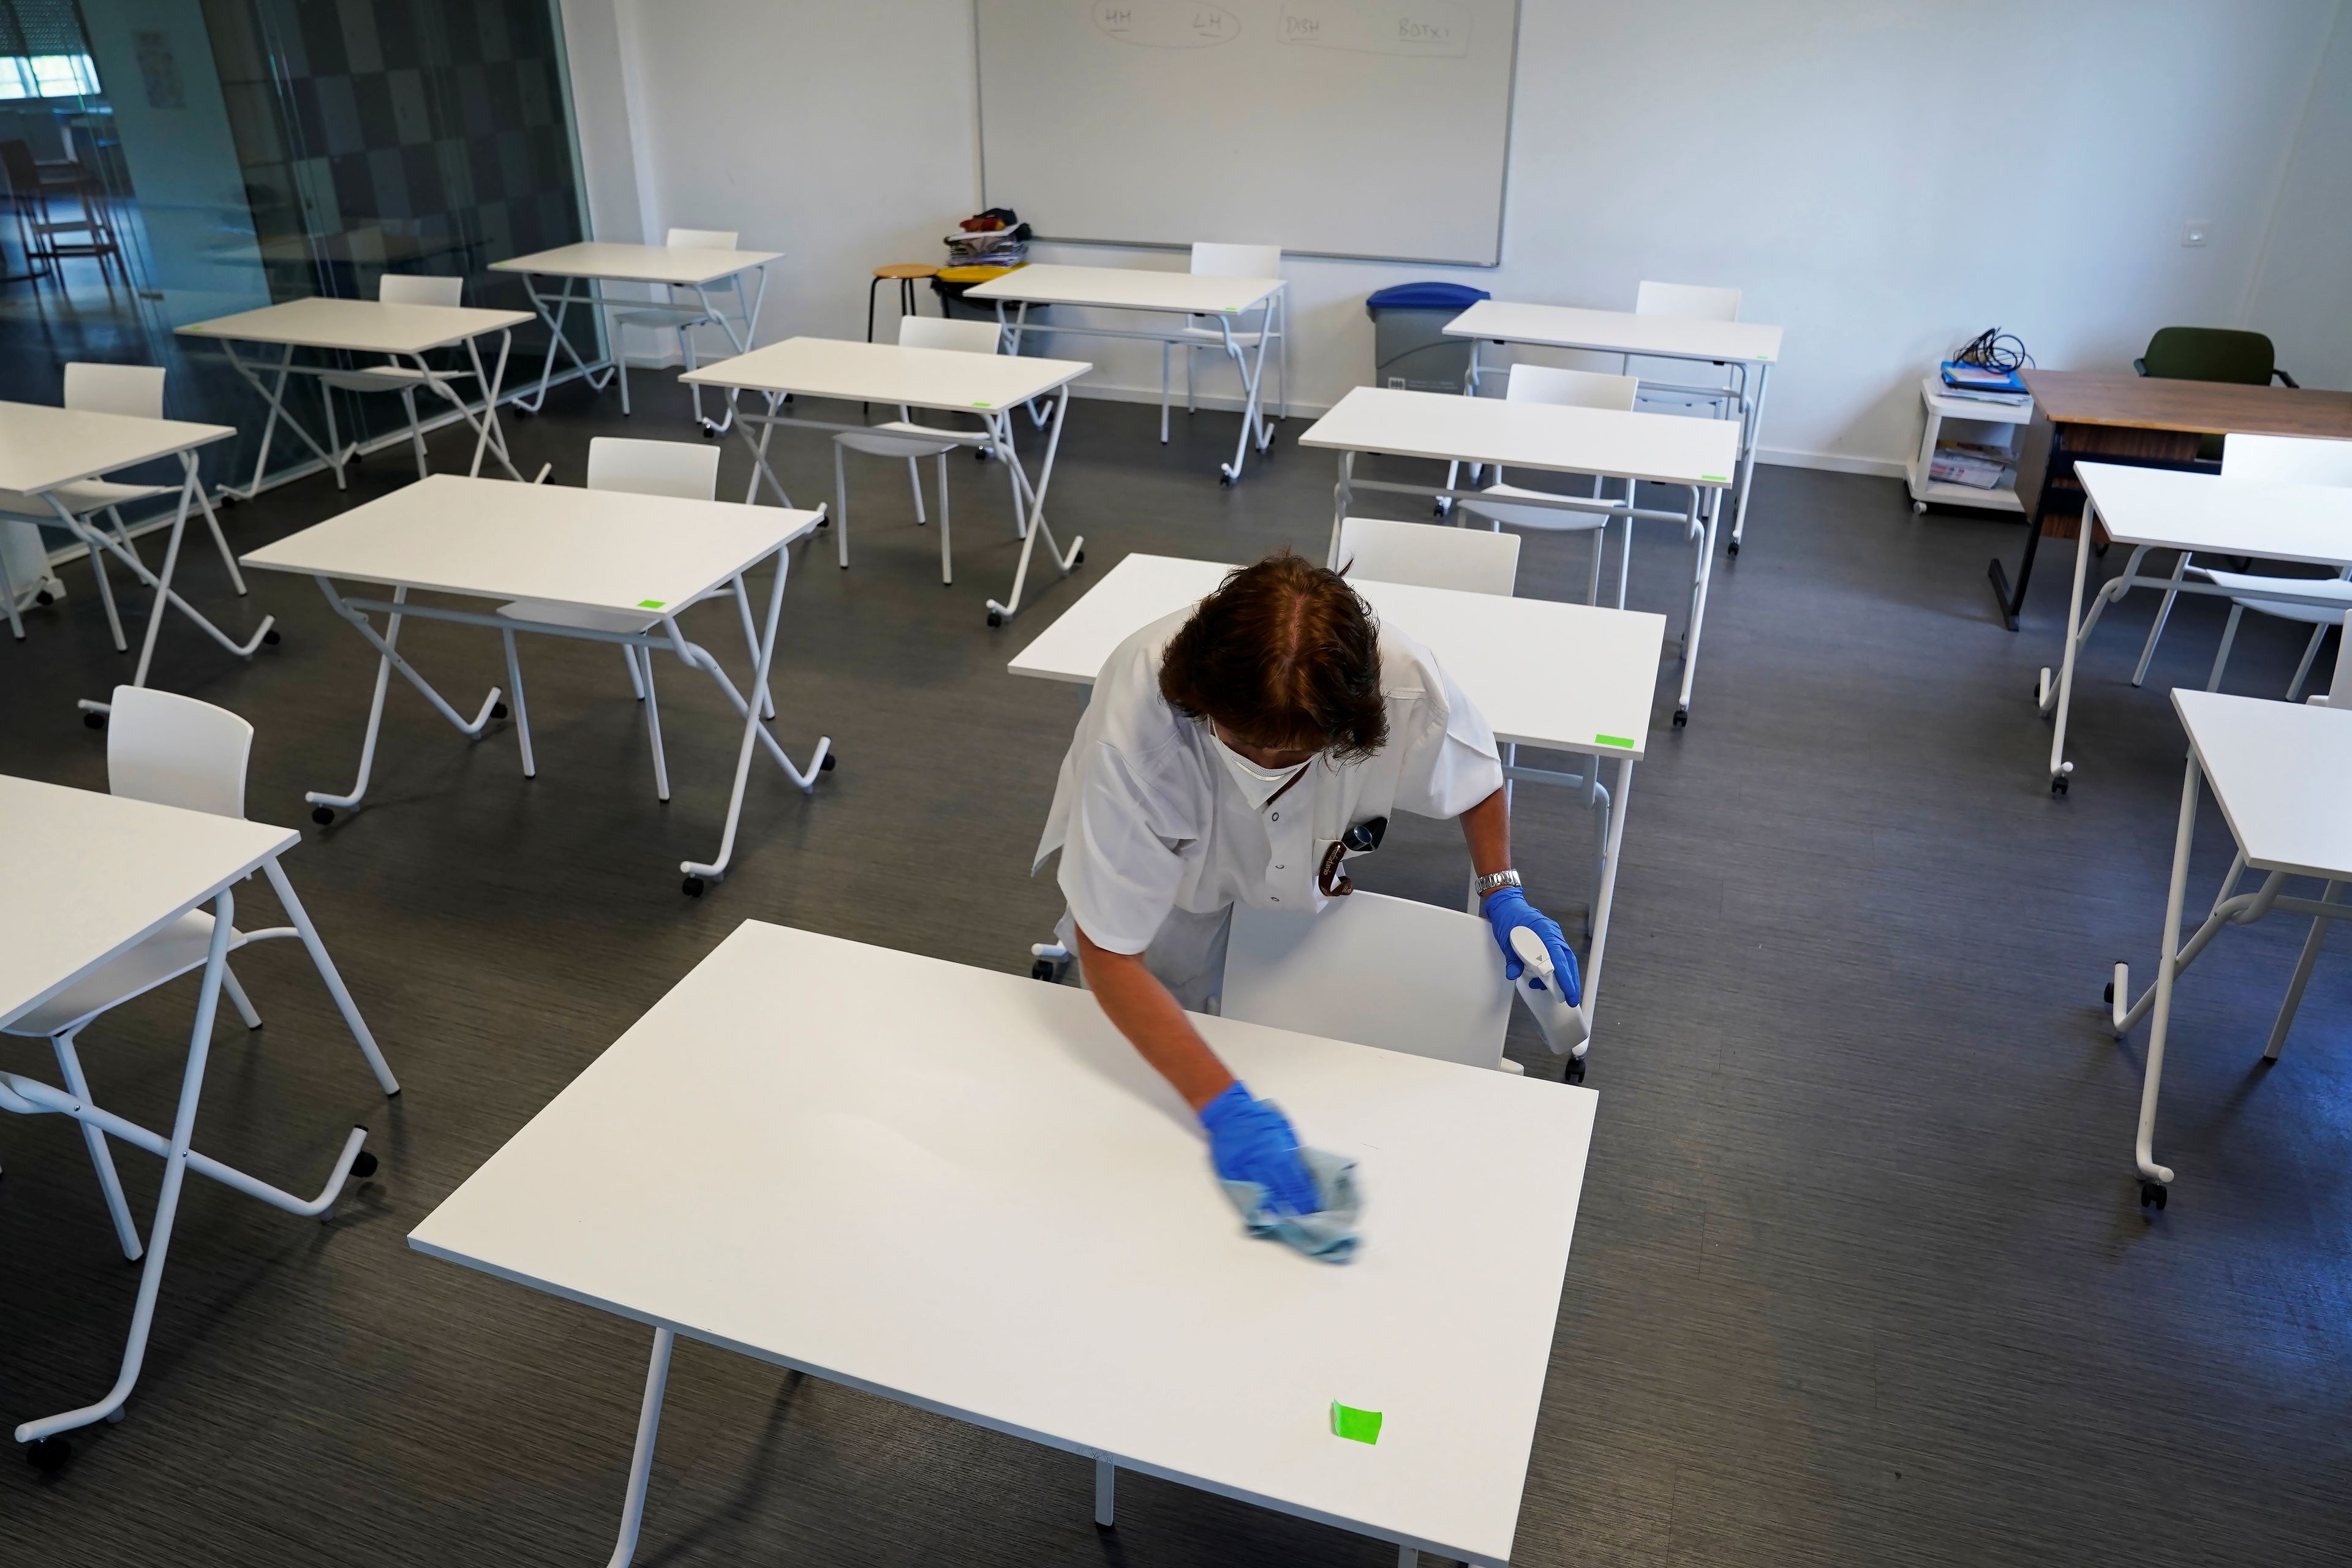 Una limpiadora desinfecta las mesas de un aula en un colegio de San Sebastián, que reabrirá la semana que viene tras la pandemia del coronavirus